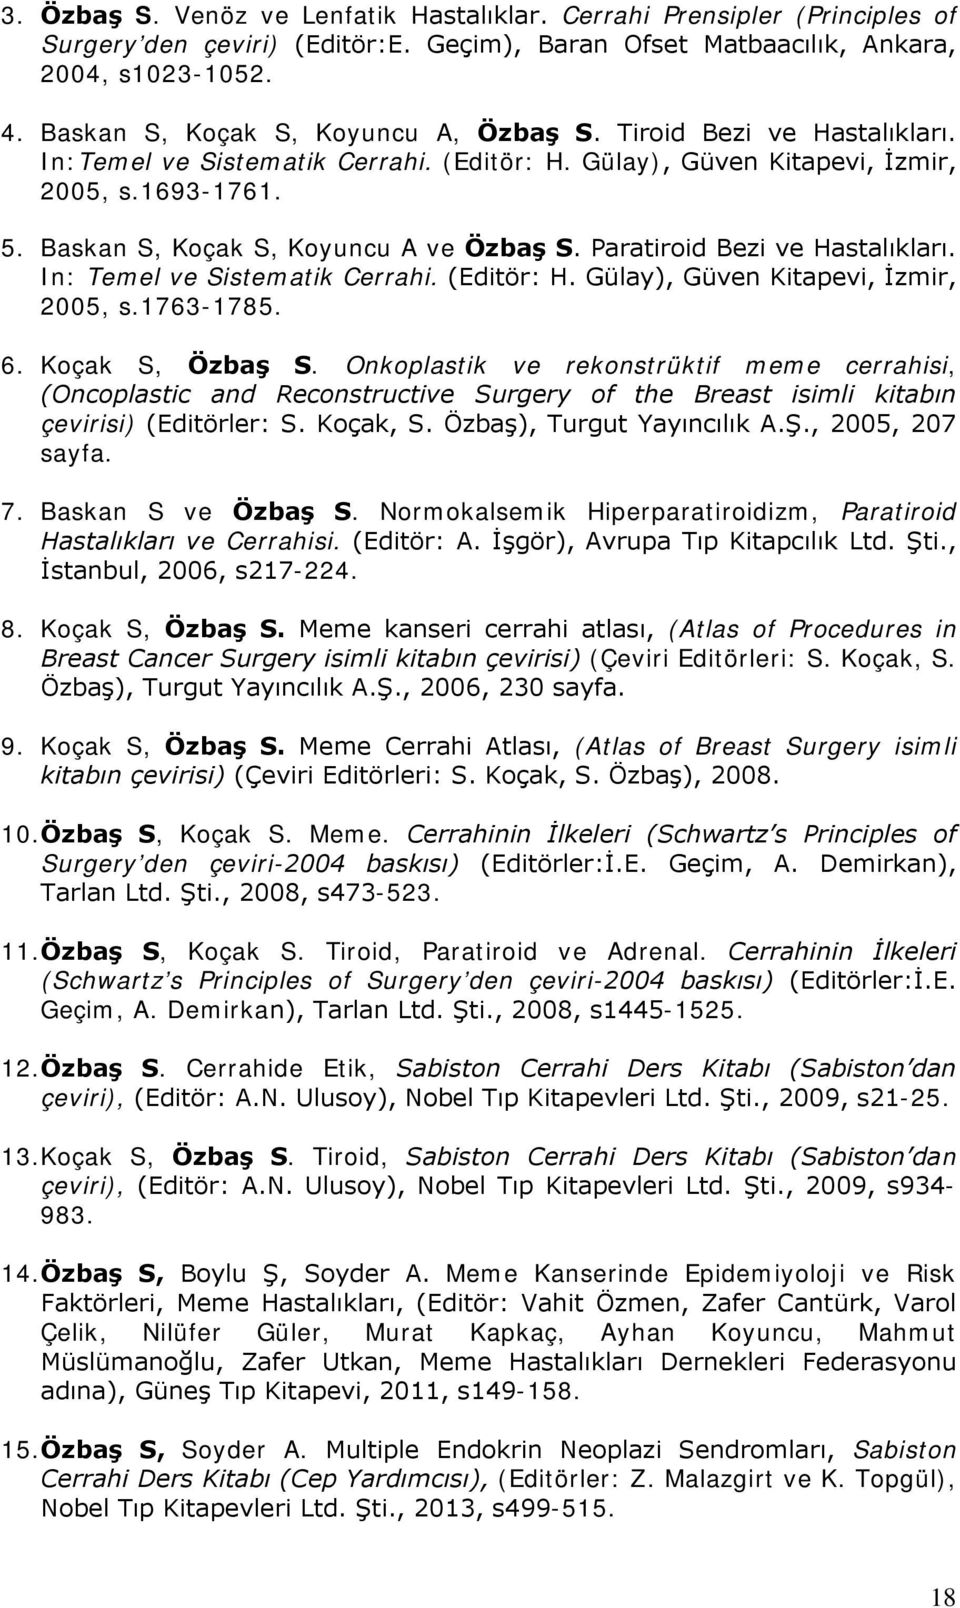 Baskan S, Koçak S, Koyuncu A ve Özbaş S. Paratiroid Bezi ve Hastalıkları. In: Temel ve Sistematik Cerrahi. (Editör: H. Gülay), Güven Kitapevi, İzmir, 2005, s.1763-1785. 6. Koçak S, Özbaş S.